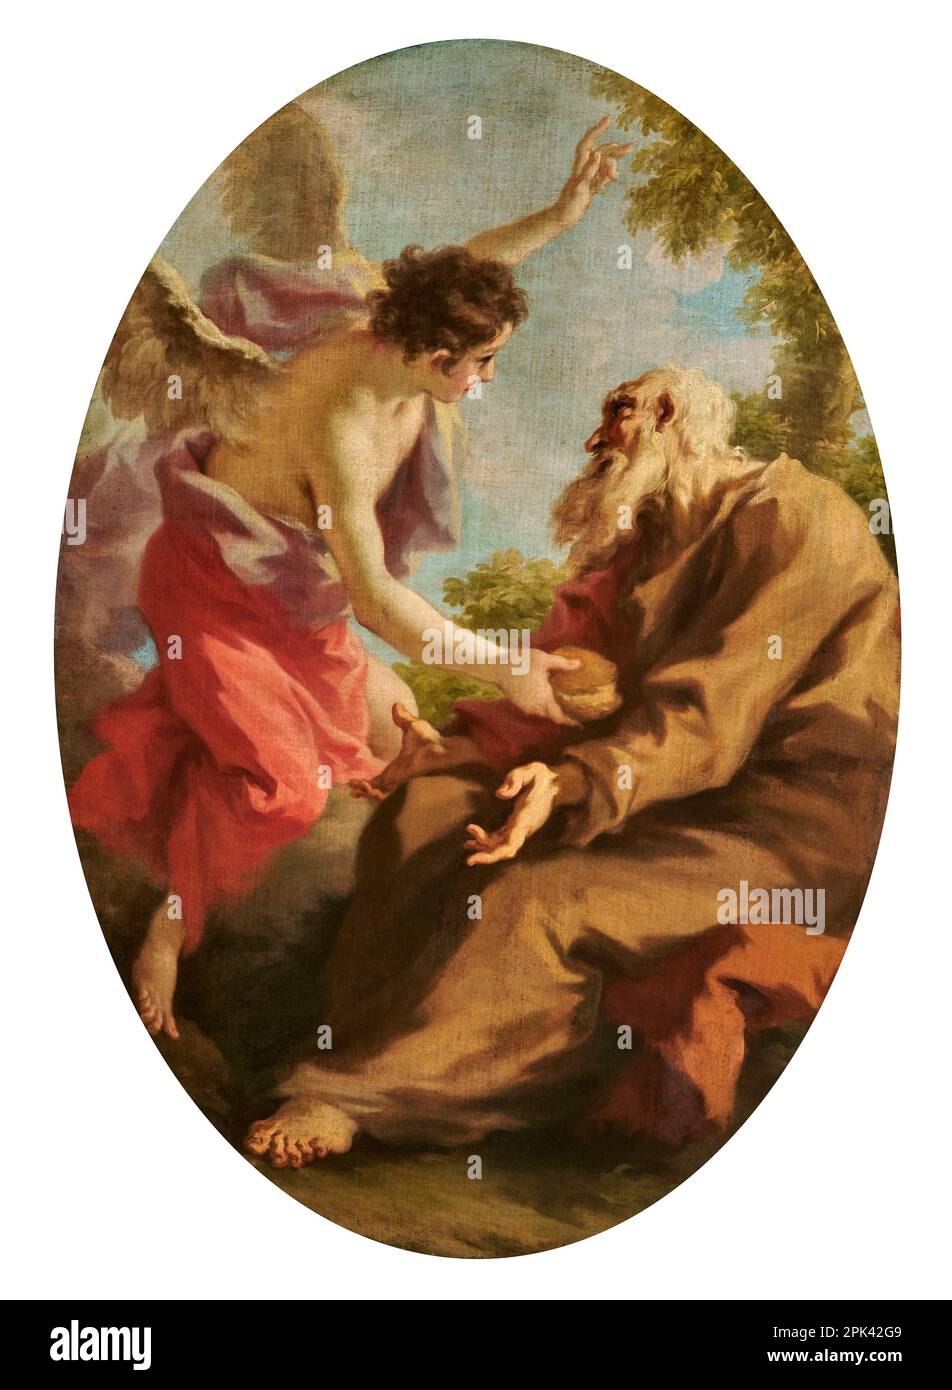 Elia confortato dall'angelo - olio su tela - Giovanni Antonio Pellegrini - 1724 - Brescia, chiesa di S. Agata Banque D'Images